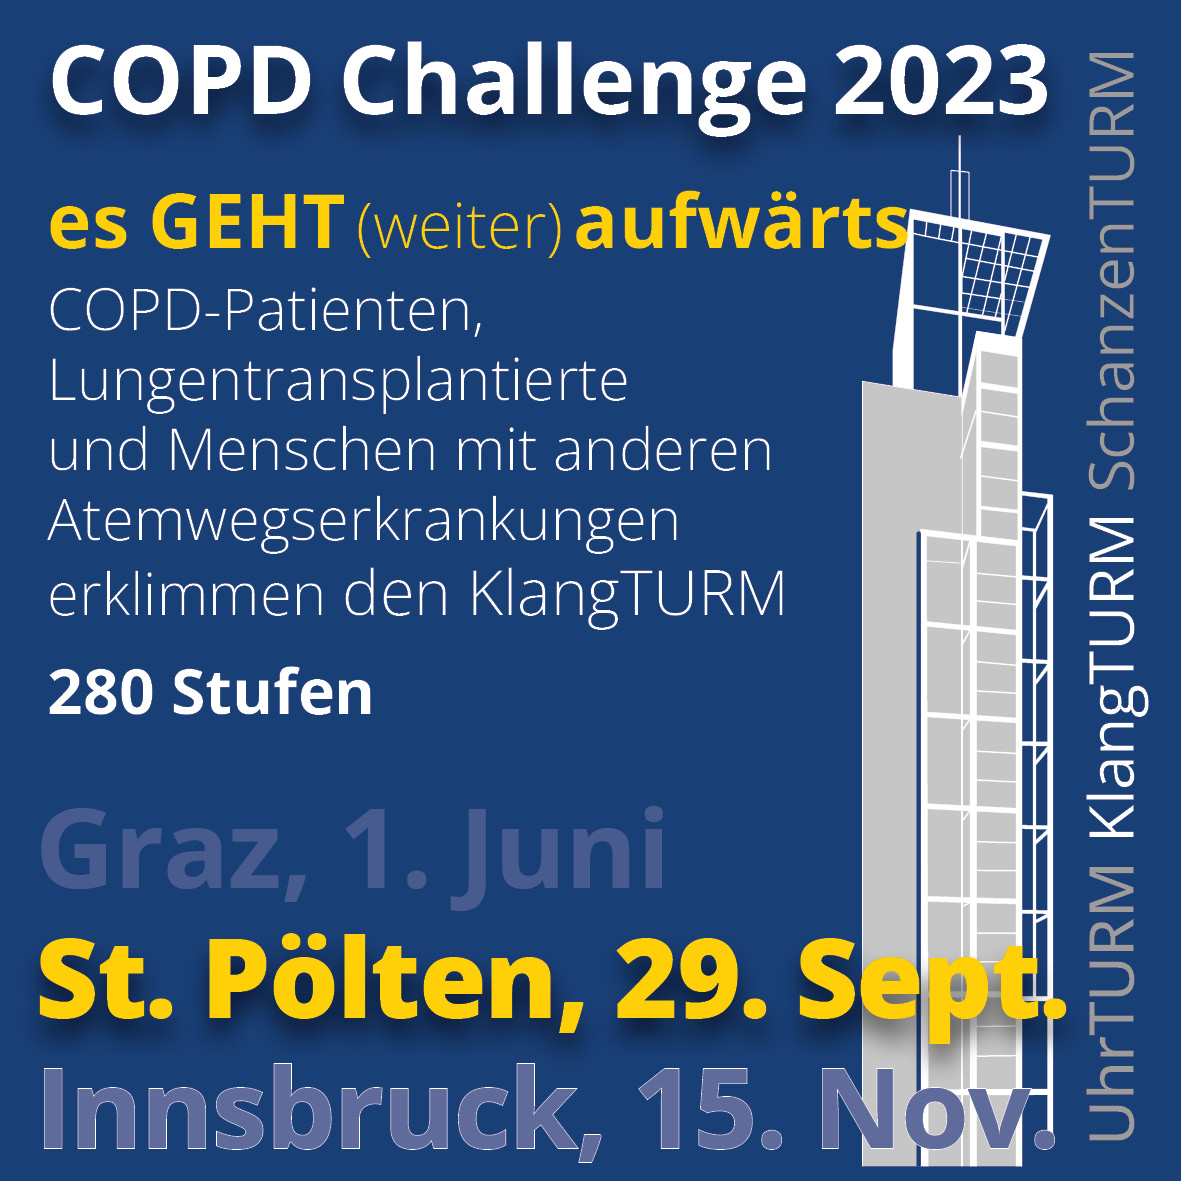 COPD Challenge 2023 Station 2: "Es geht aufwärts" in St. Pölten